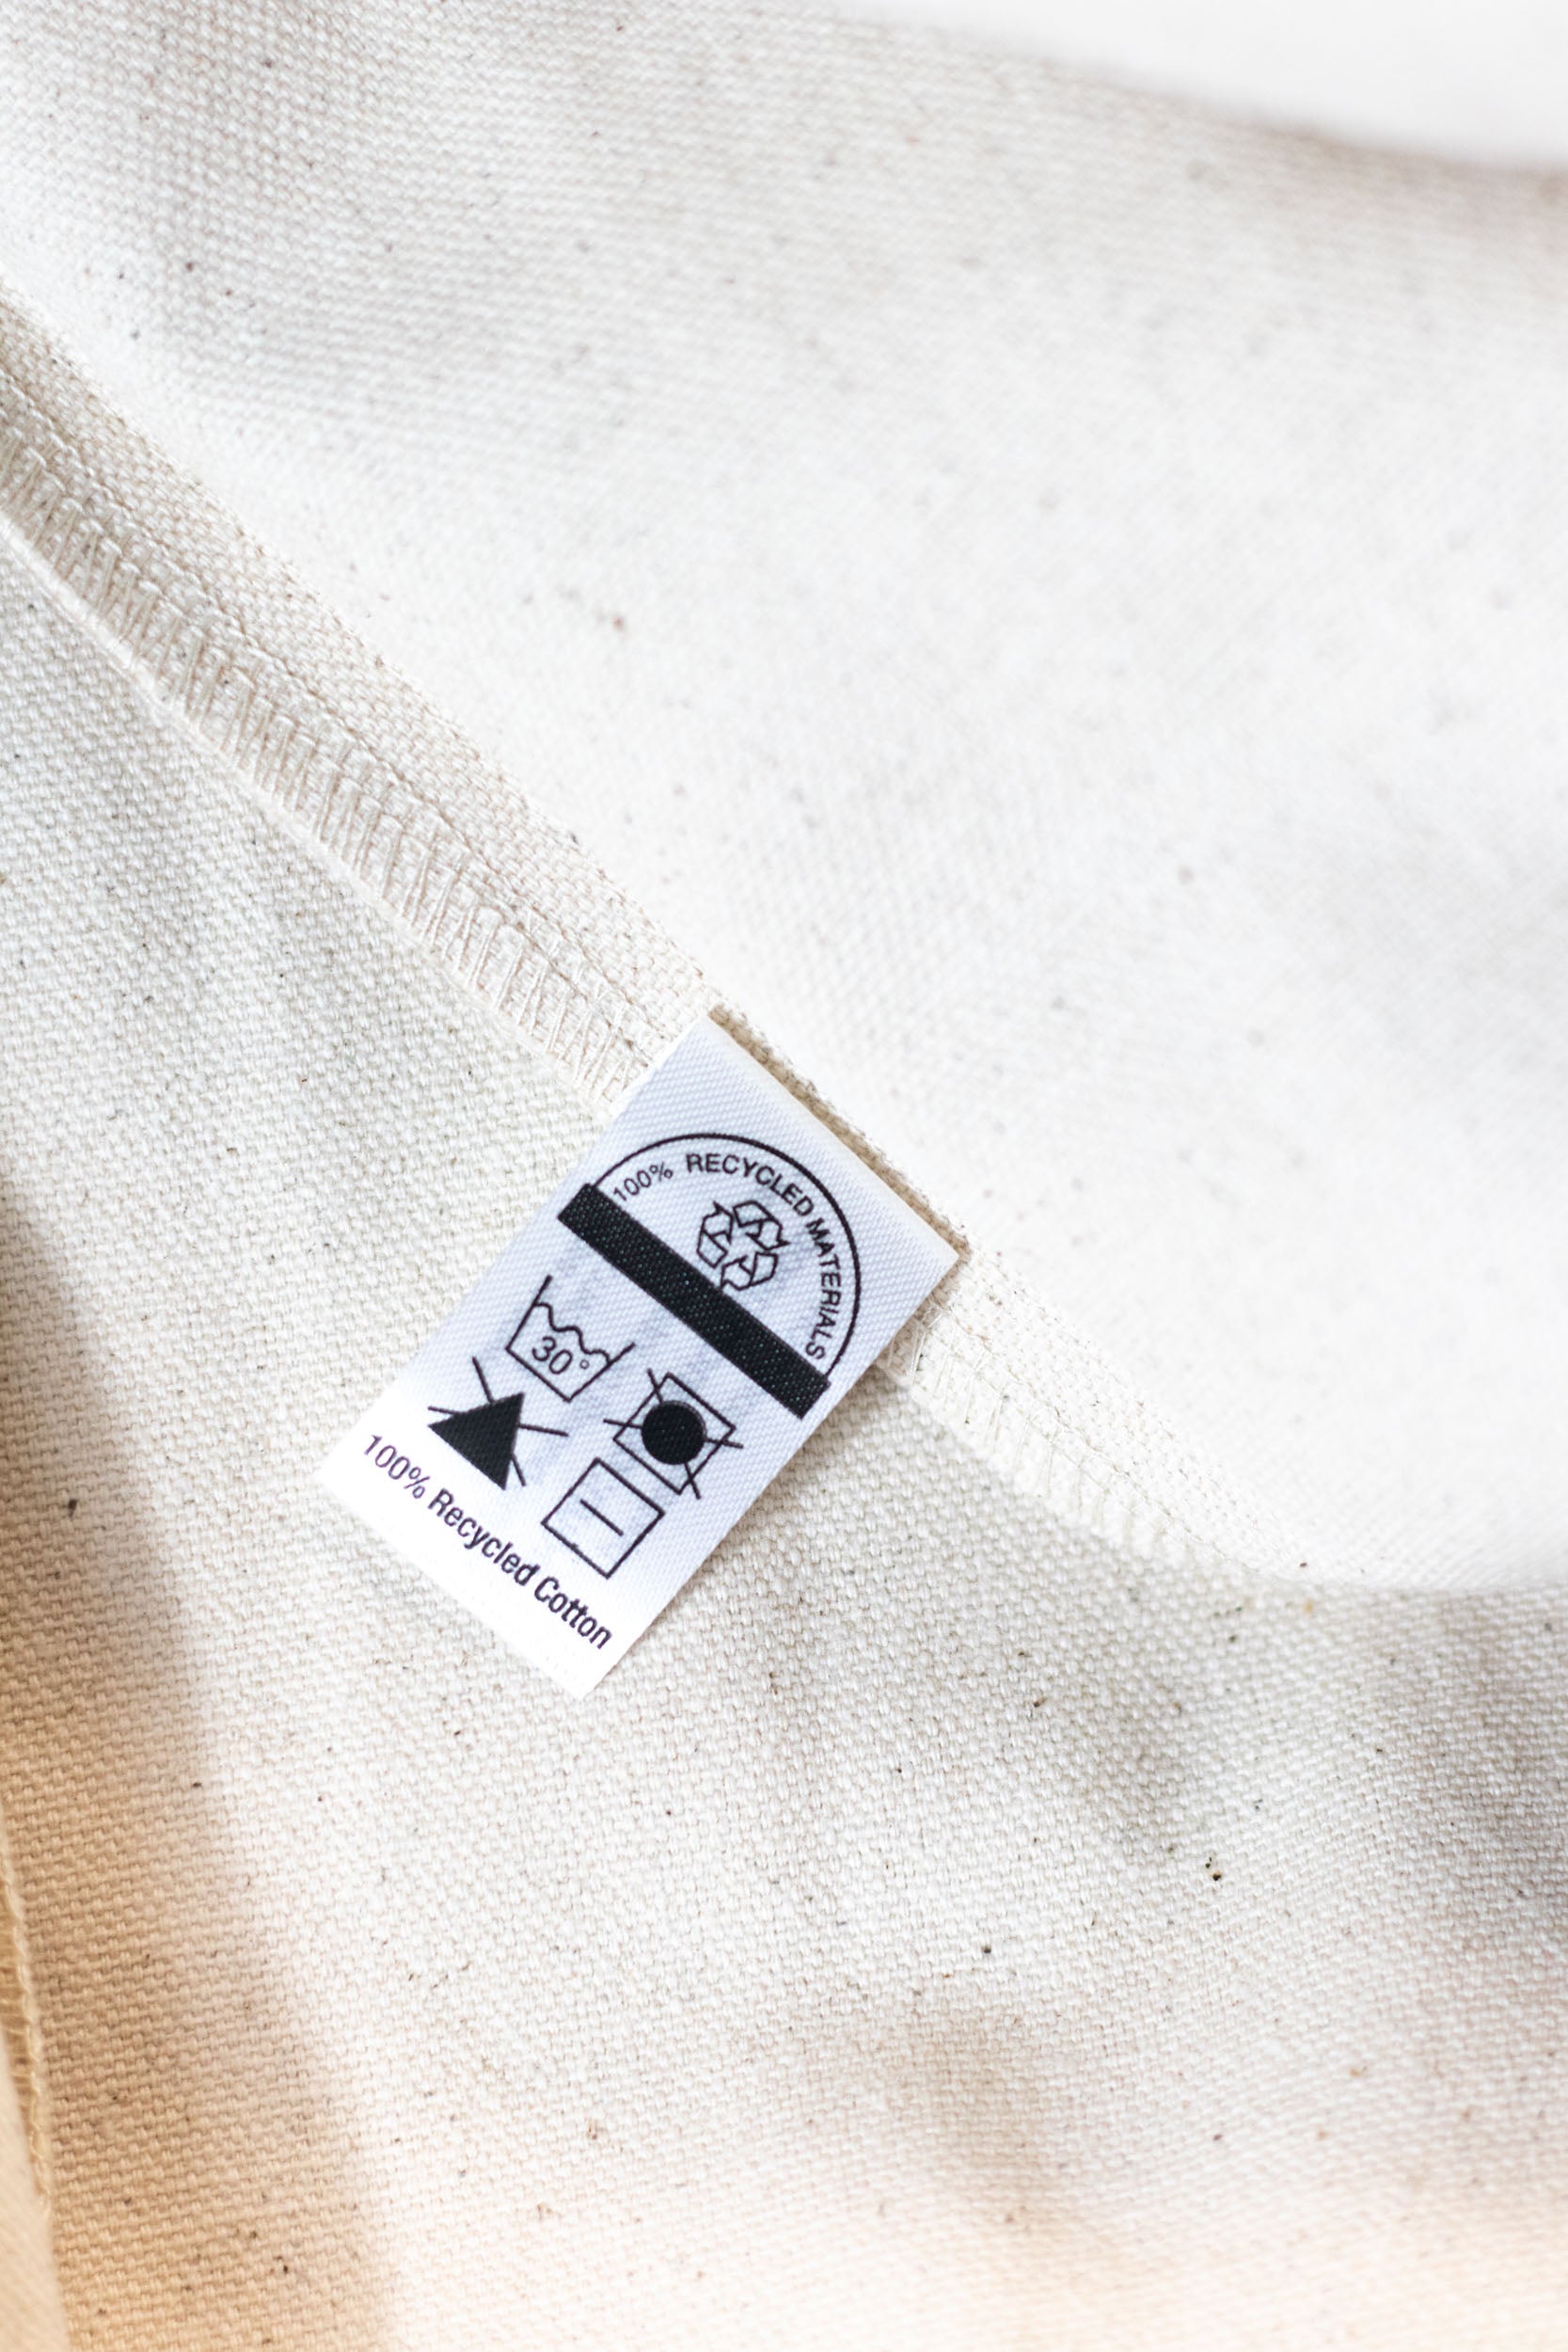  100% Recycled Cotton Market Tote - Estd Logo